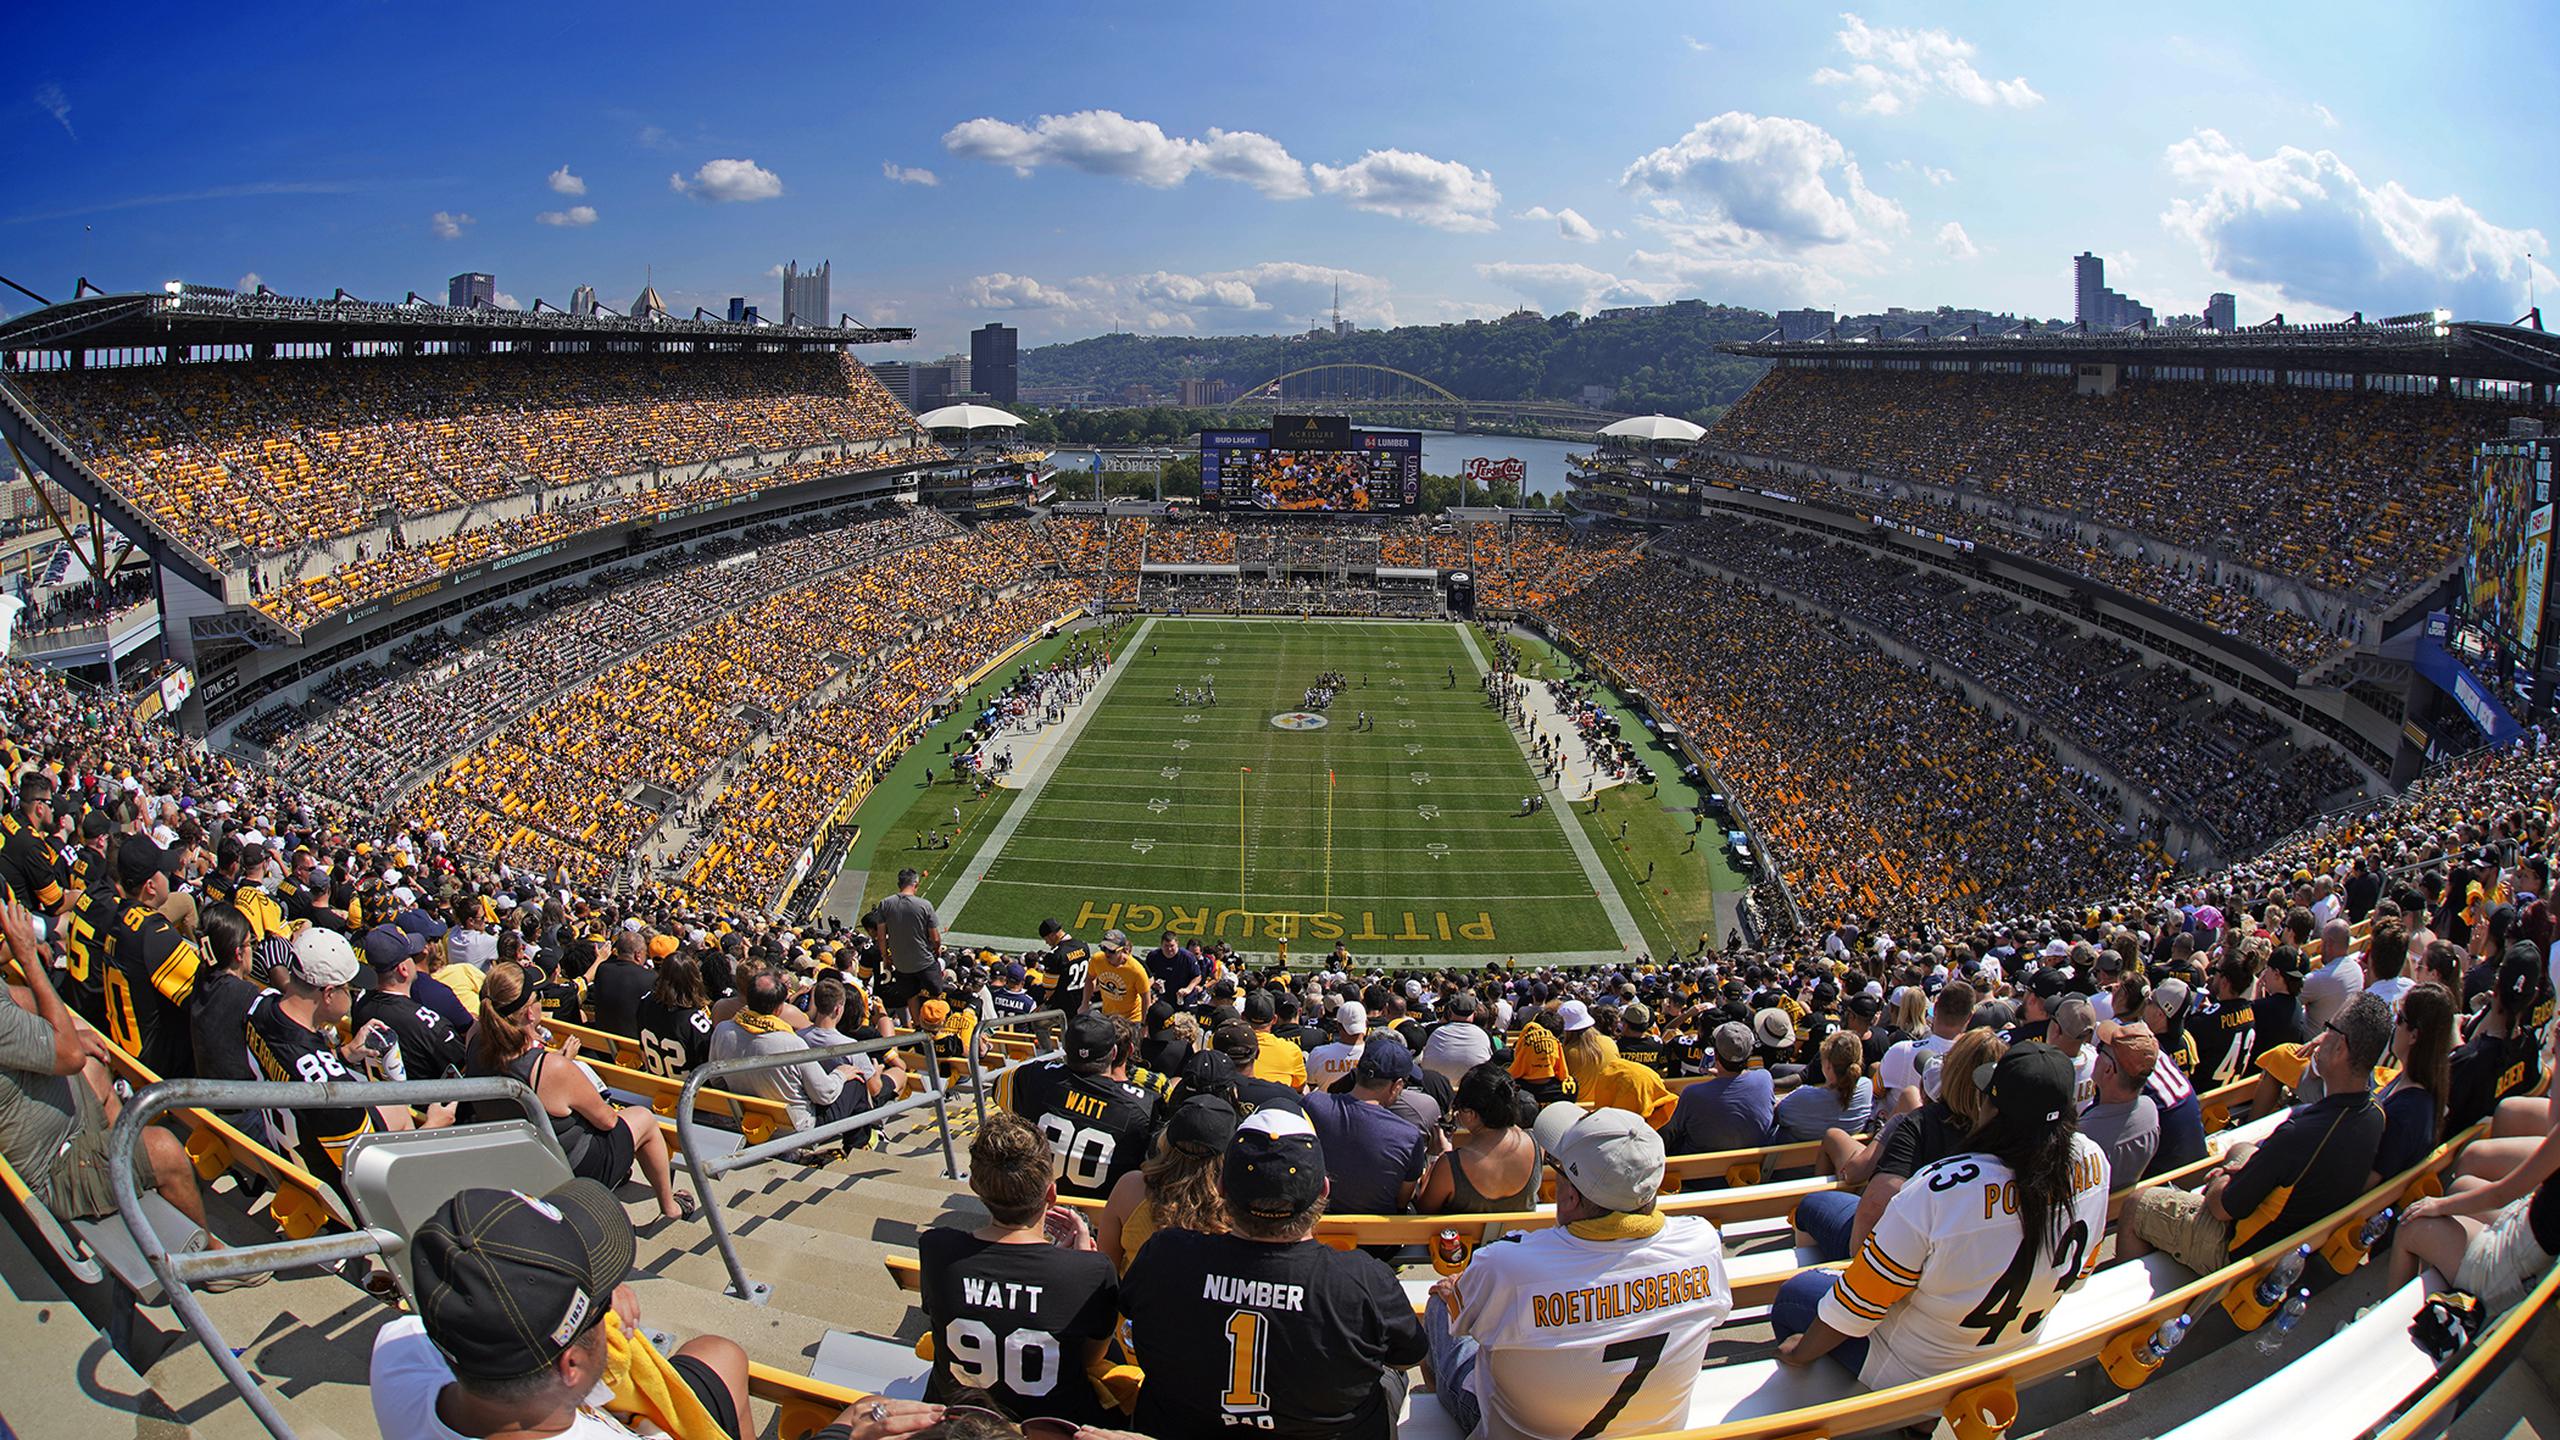 Foto panorámica del juego entre los Steelers de Pittsburgh contra Patriots de Nueva Inglaterra, en el Acrisure Stadium en Pittsburgh, el domingo 18 de septiembre de 2022. El domingo 2 de octubre un aficionado murió en el hospital después de caer de las escaleras eléctricas, ser atendido en el lugar y trasladado en estado crítico al hospital.